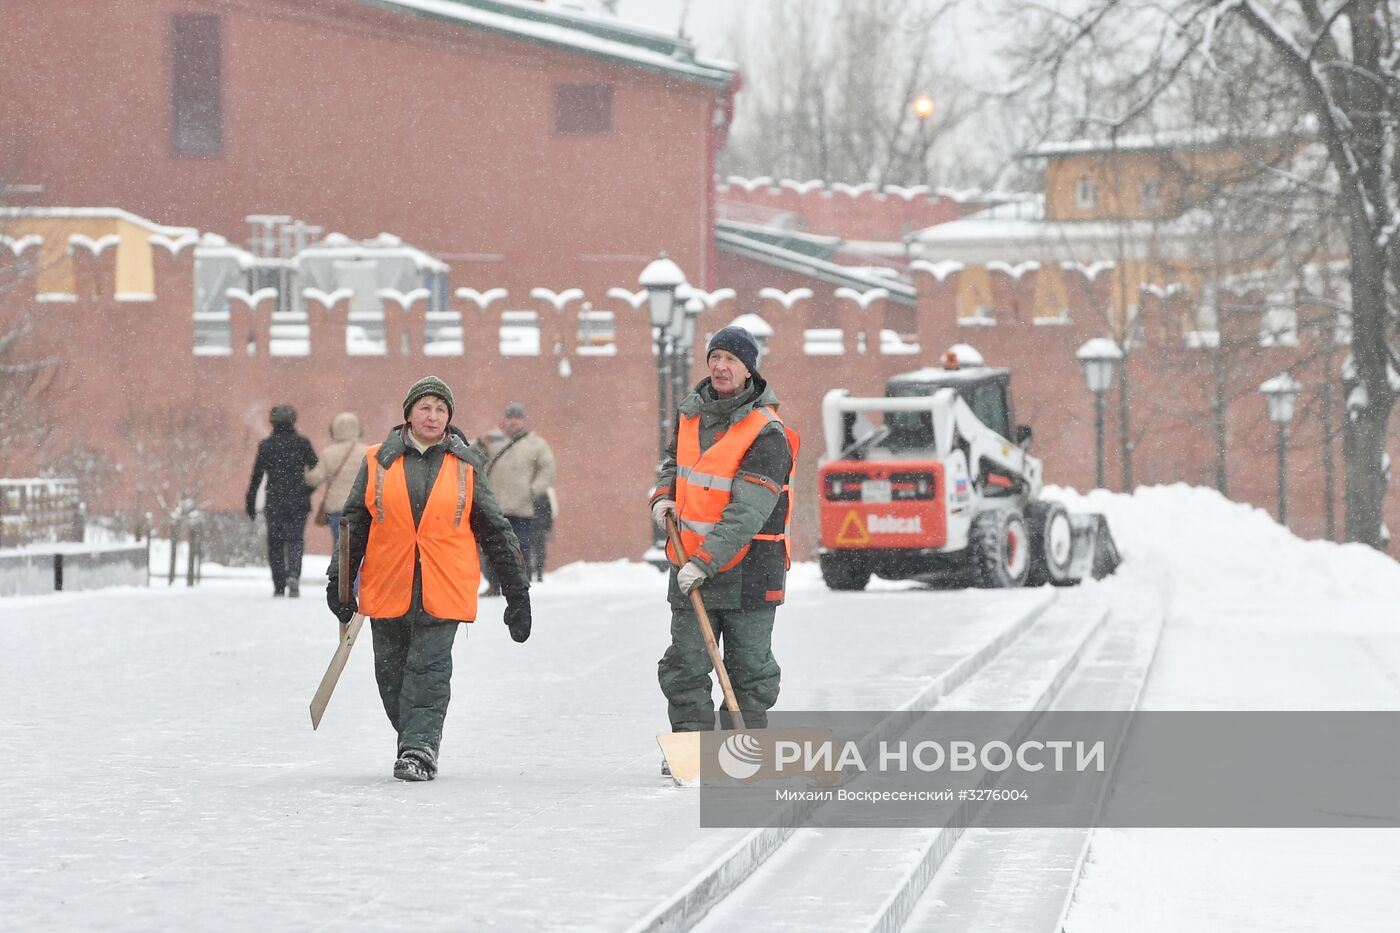 Коммунальные службы Москвы ликвидируют последствия сильного снегопада